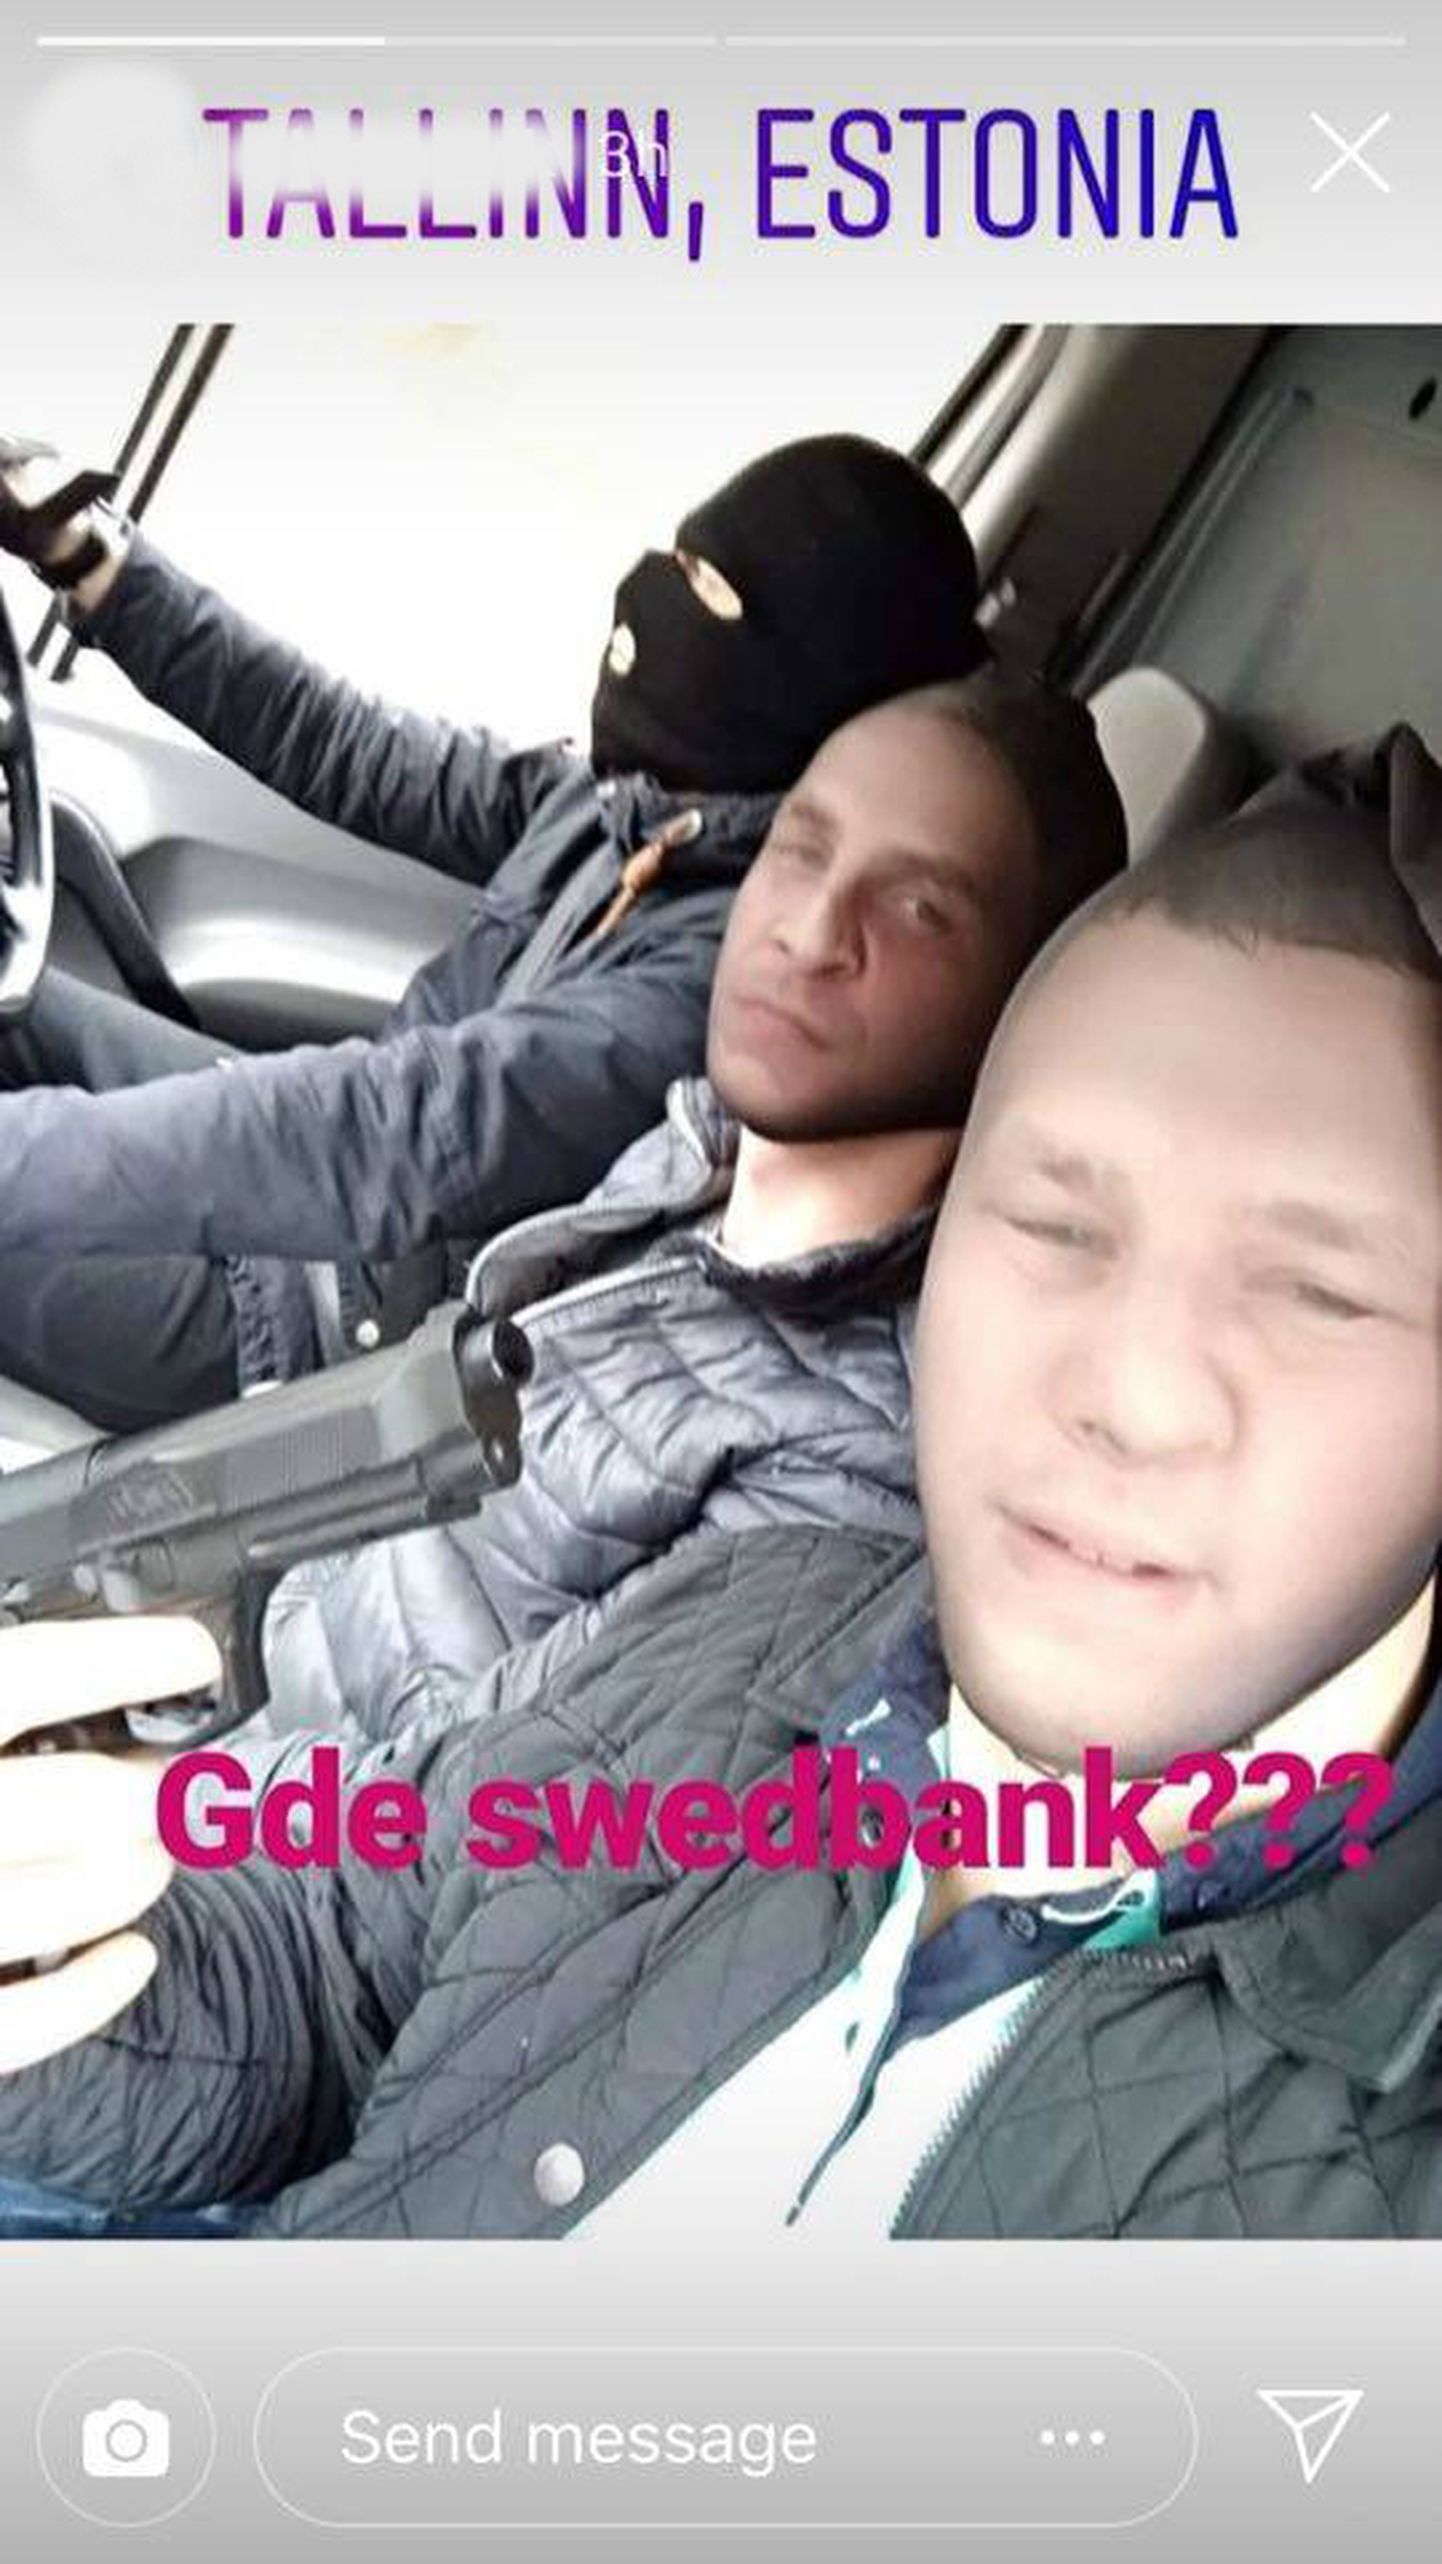 «Gde Swedbank?» - kolm noormeest võtsid kätte ja otsustasid ühel sombusel pühapäeval Tallinnas inimesi hirmutada.